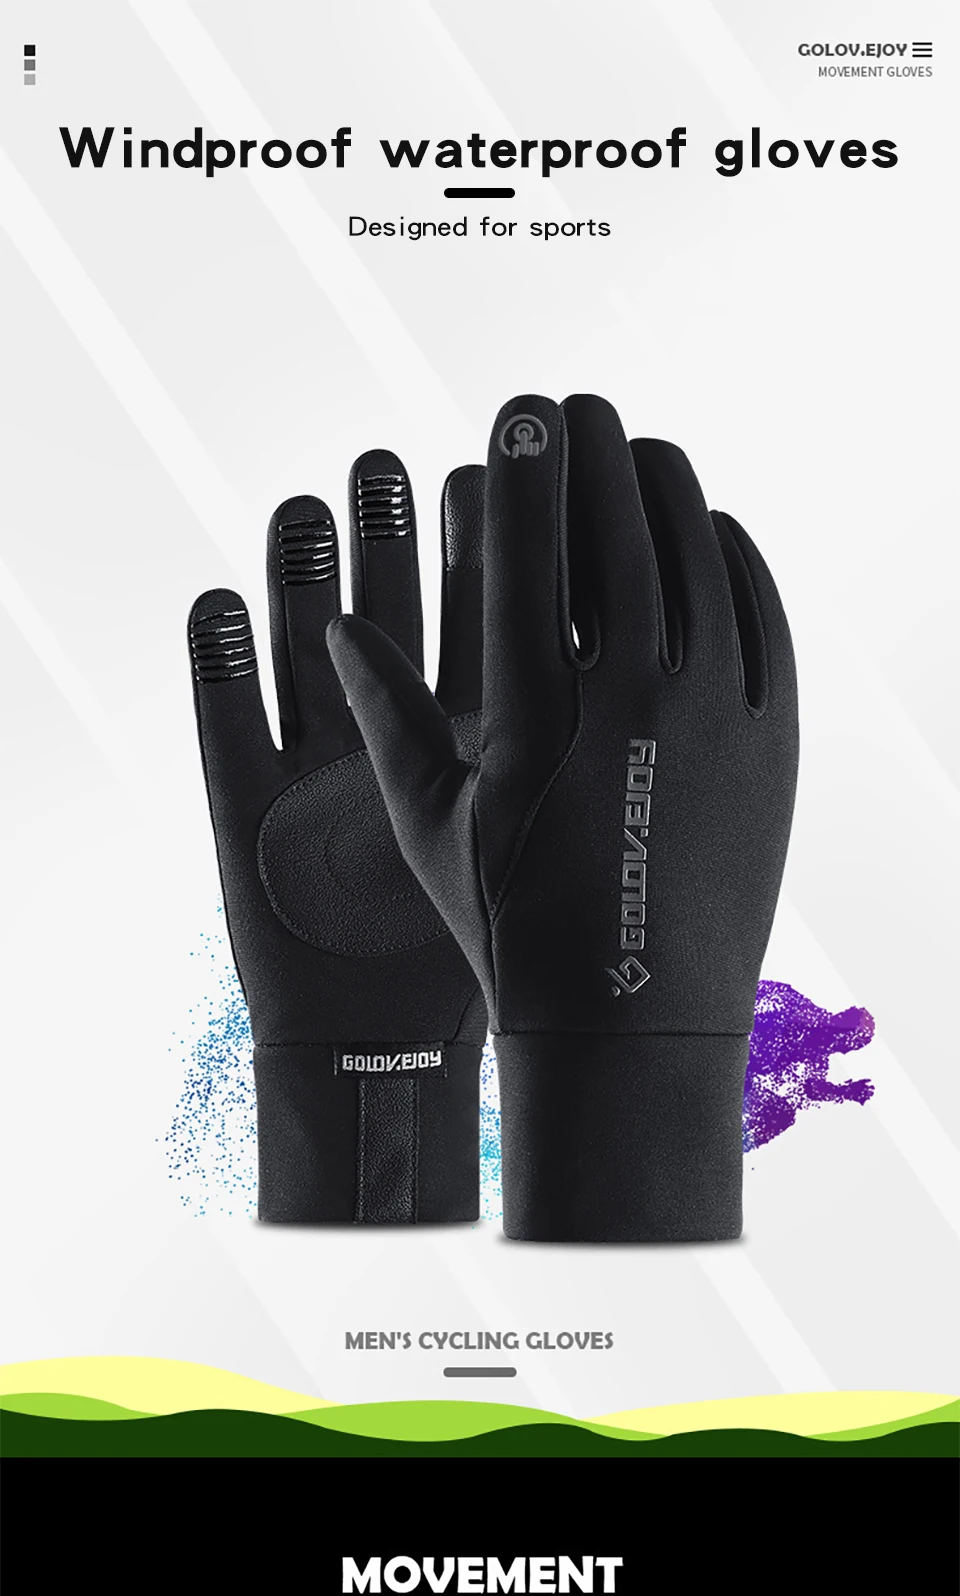 Зимние перчатки для катания, мужские, для улицы, противоскользящие, сенсорный экран, водонепроницаемые, мужские перчатки, ветрозащитные, с карманами, плюс бархат, для альпинизма, G016